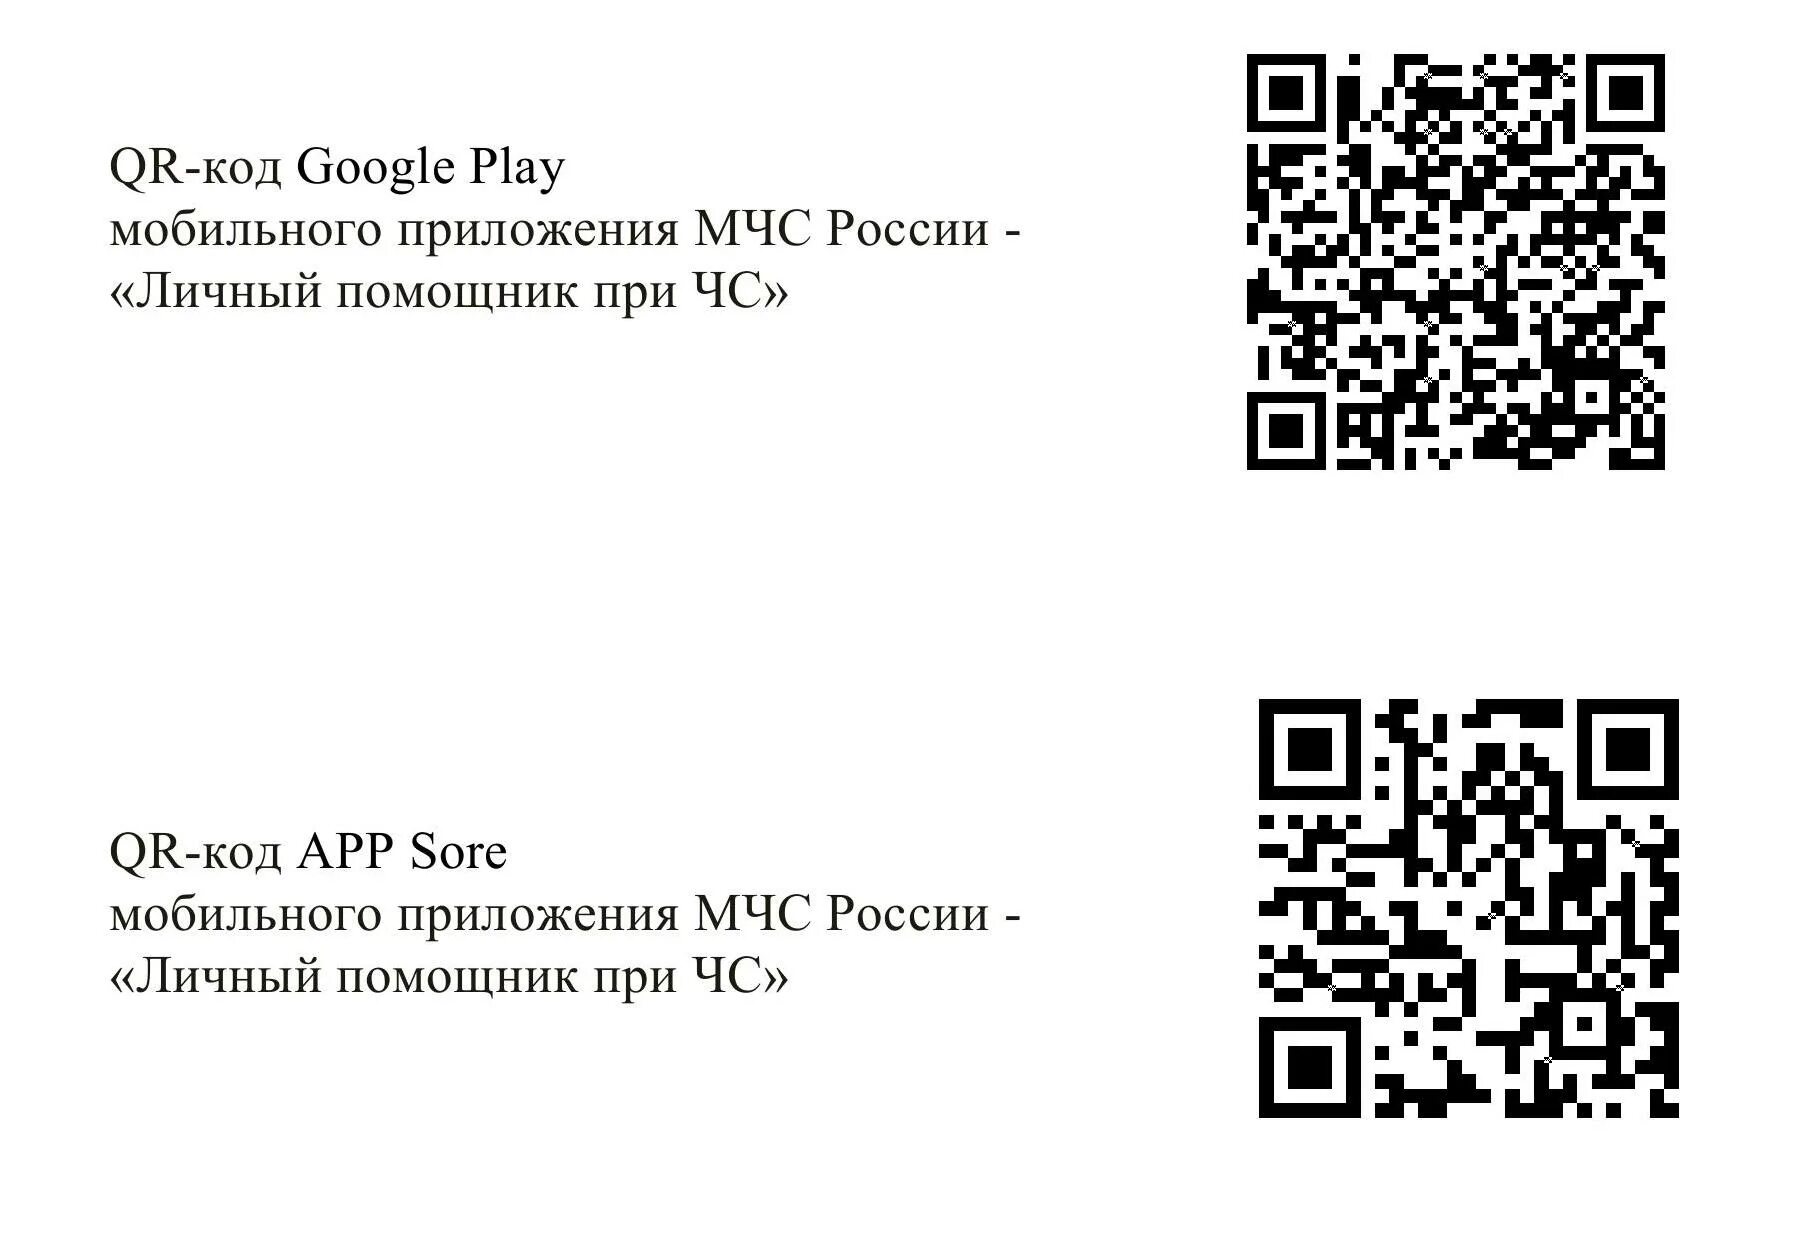 QR код. QR код МЧС России. Мобильное приложение МЧС России QR код. QR коды для МЧС России.